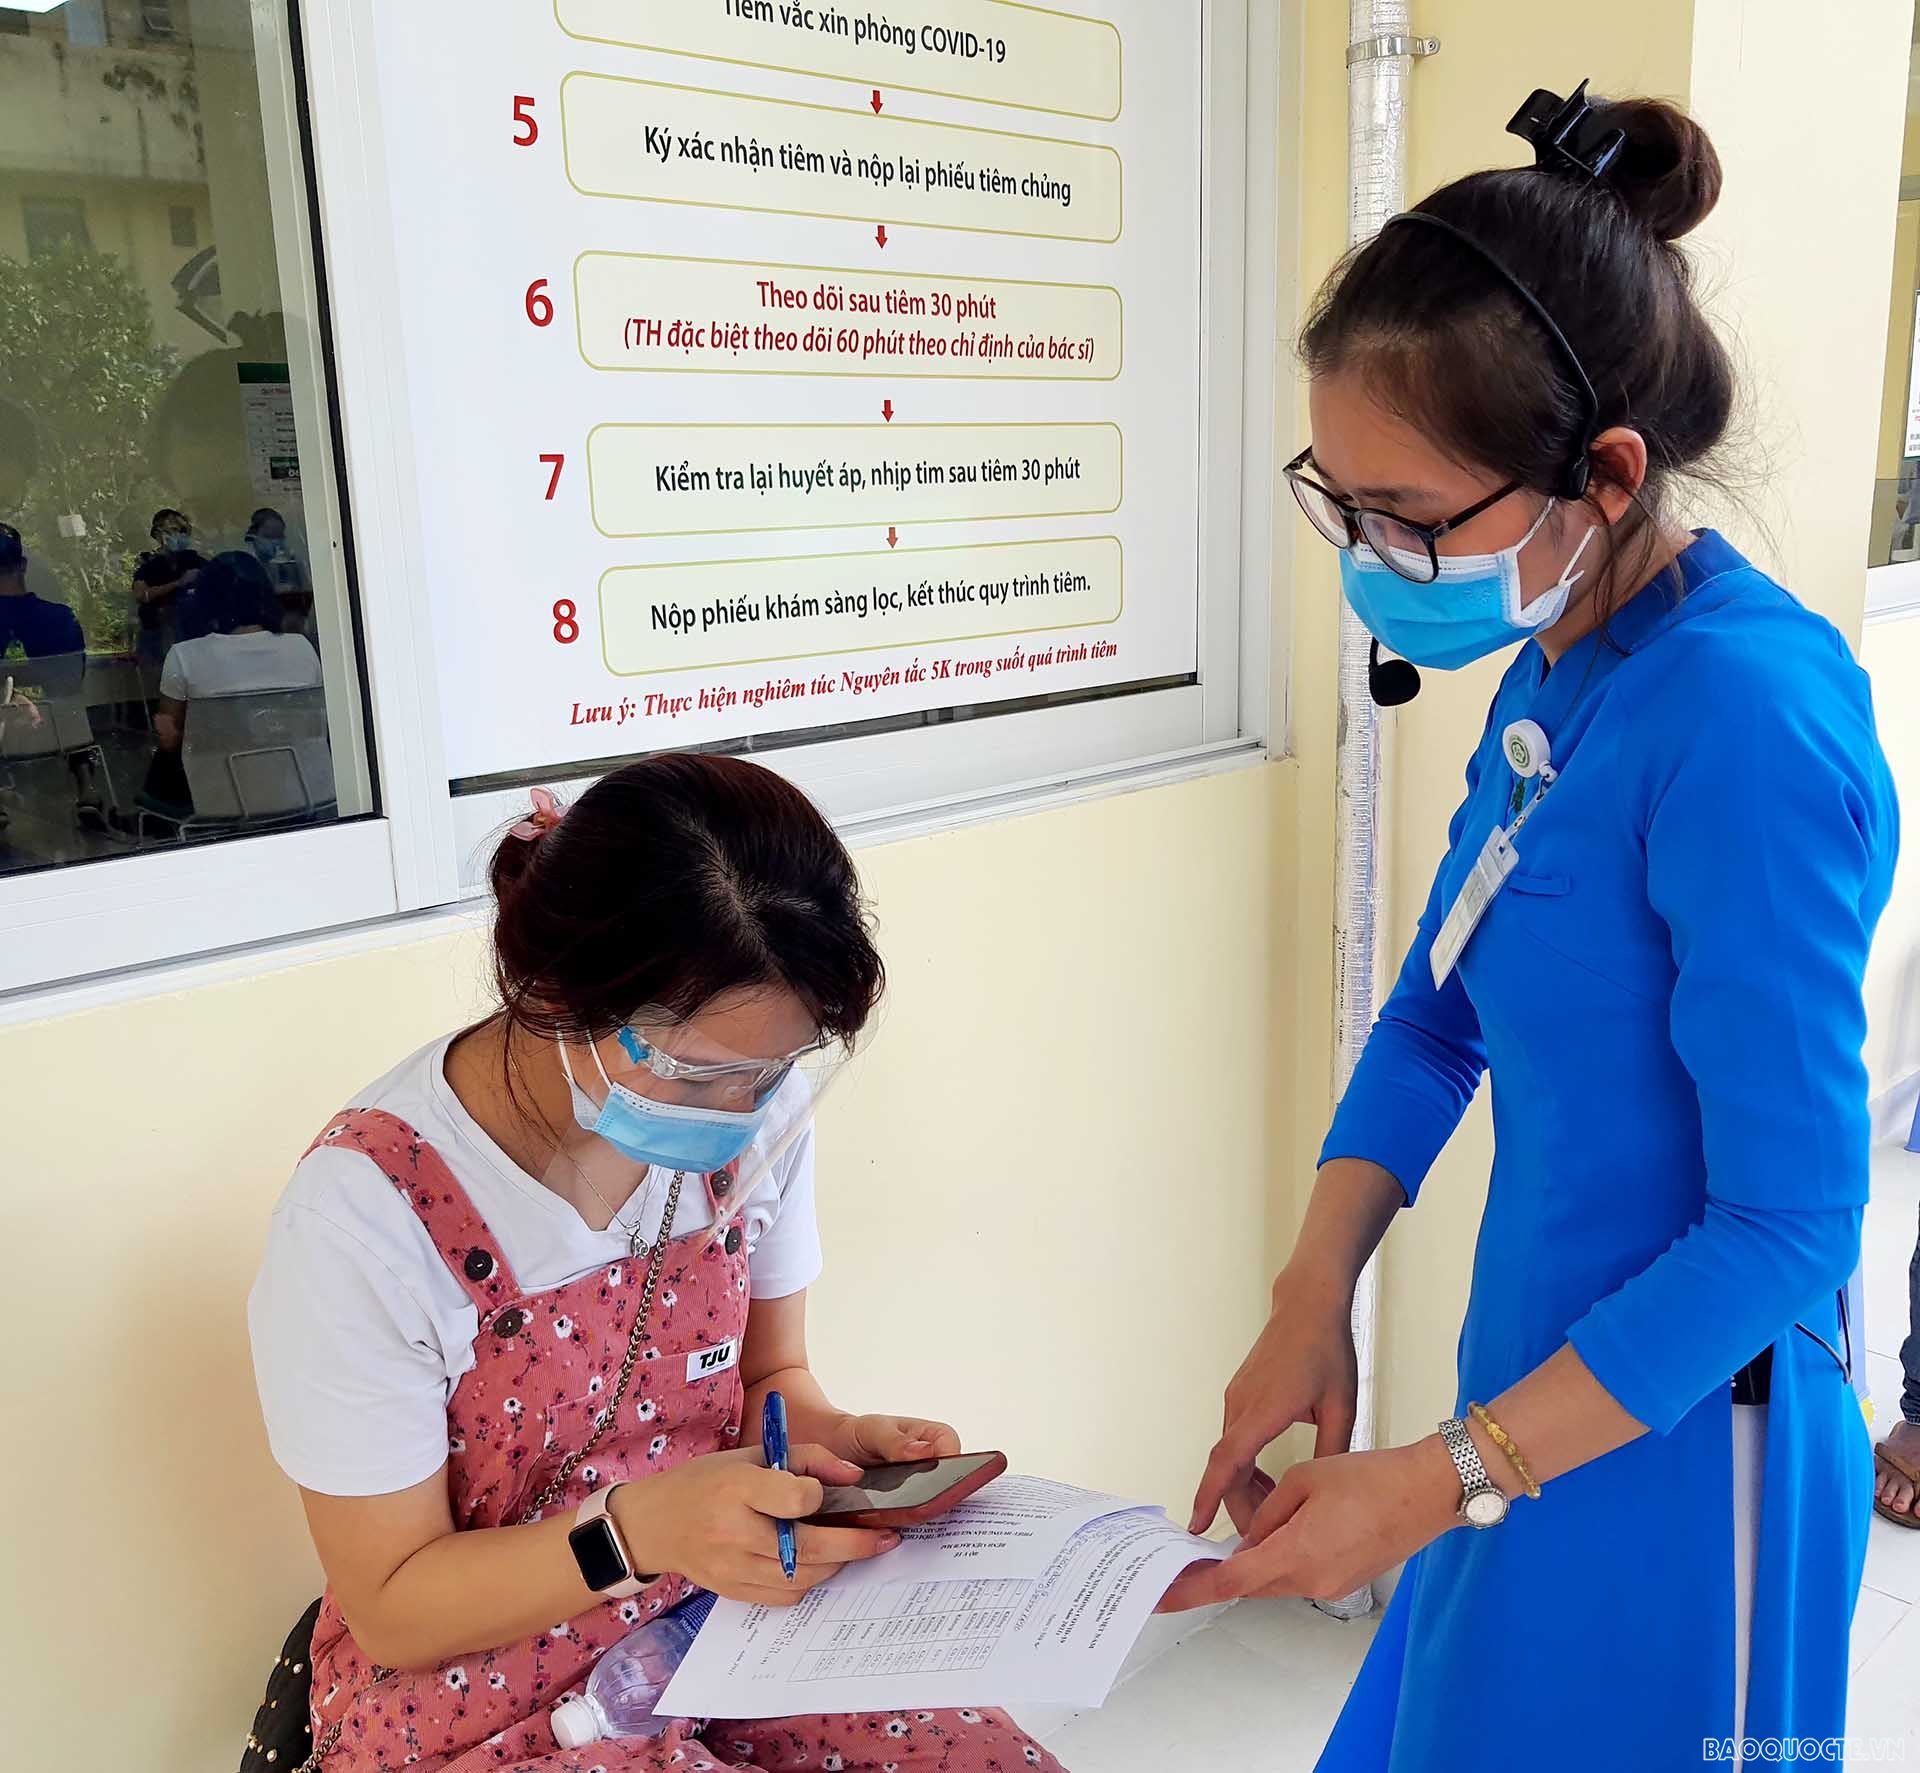 Nhân viên y tế trong bộ áo dài đang hướng dẫn người dân đăng ký tờ khai y tế trên mạng và sự nghiêm túc của người dân ngồi đợi đến lượt được tiêm vaccine. (Ảnh: Minh Hòa)